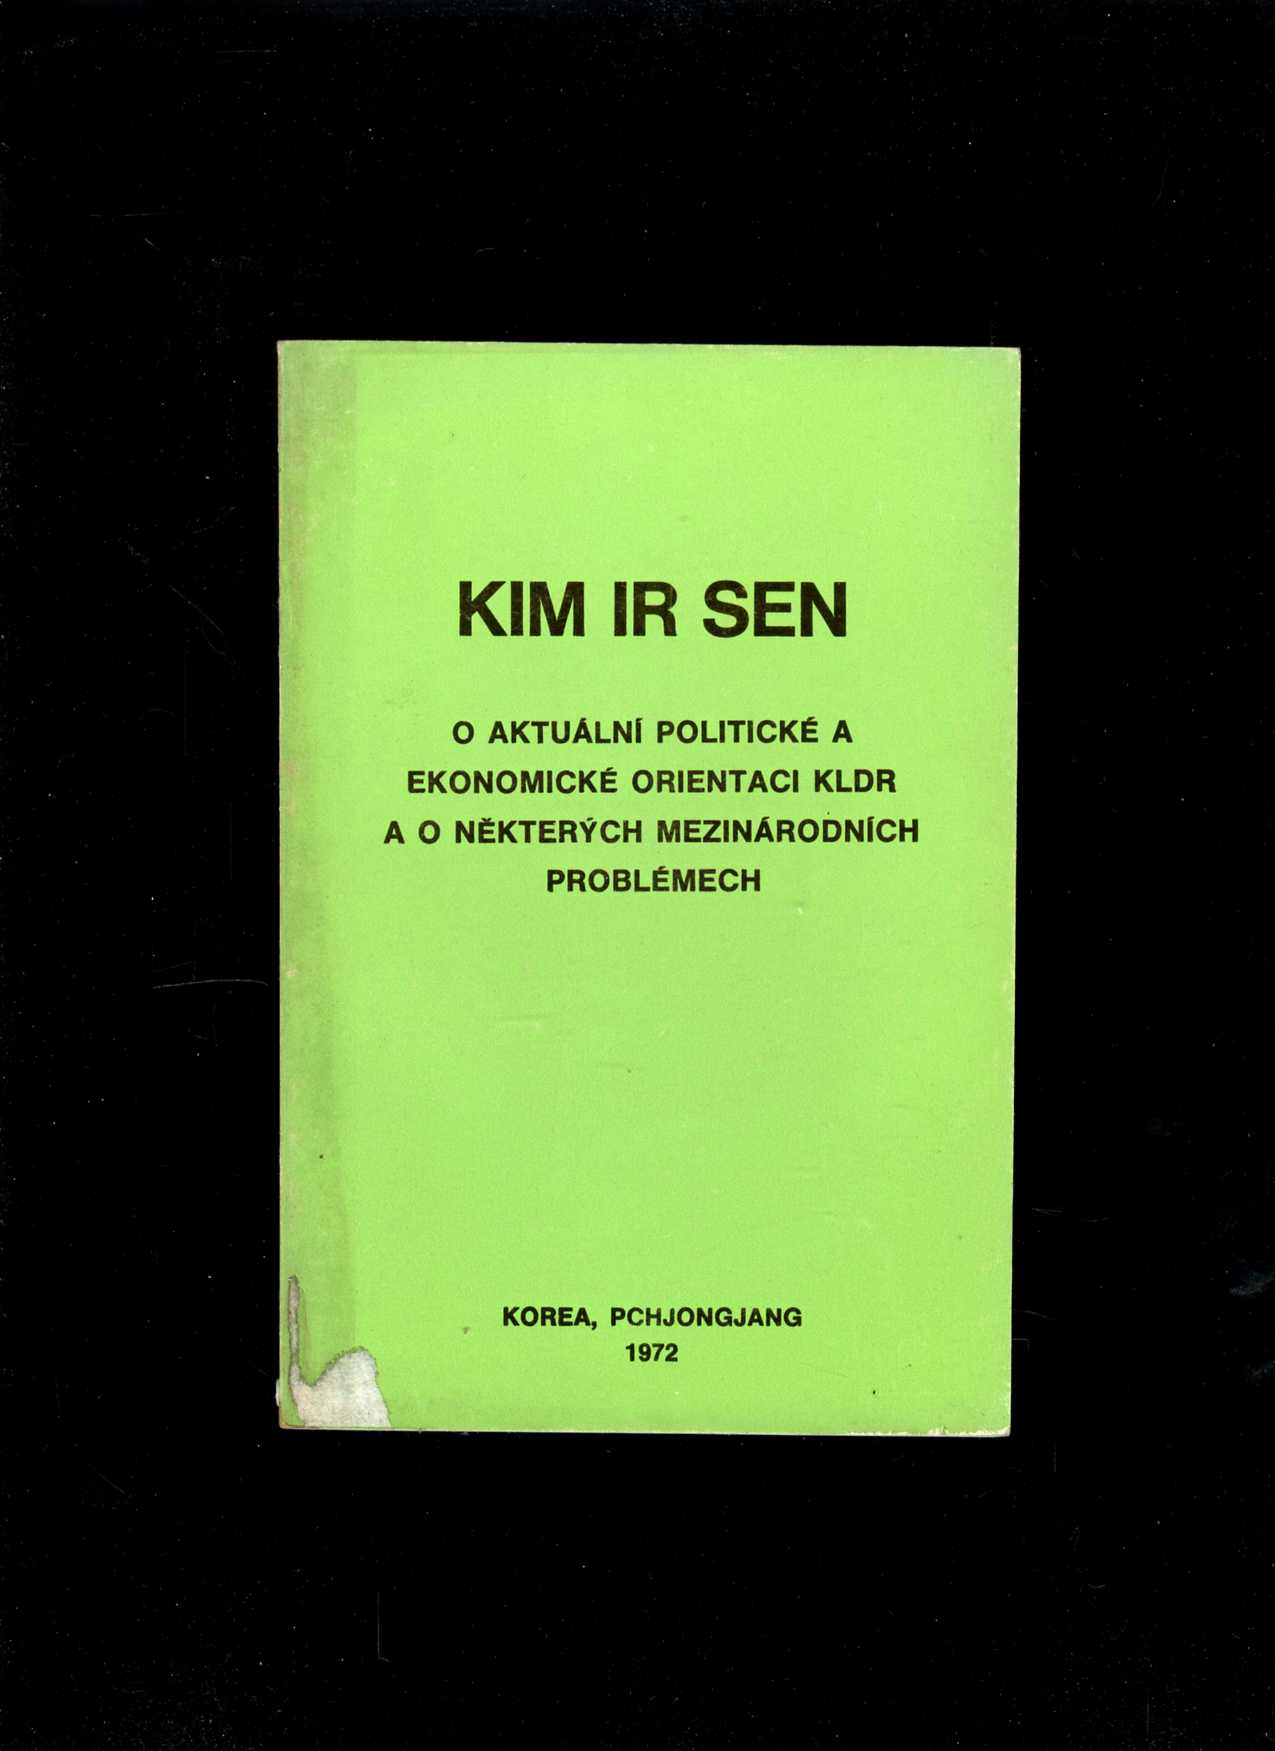 O aktualní politické a ekonomické orientaci KLDR (Kim Ir Sen)